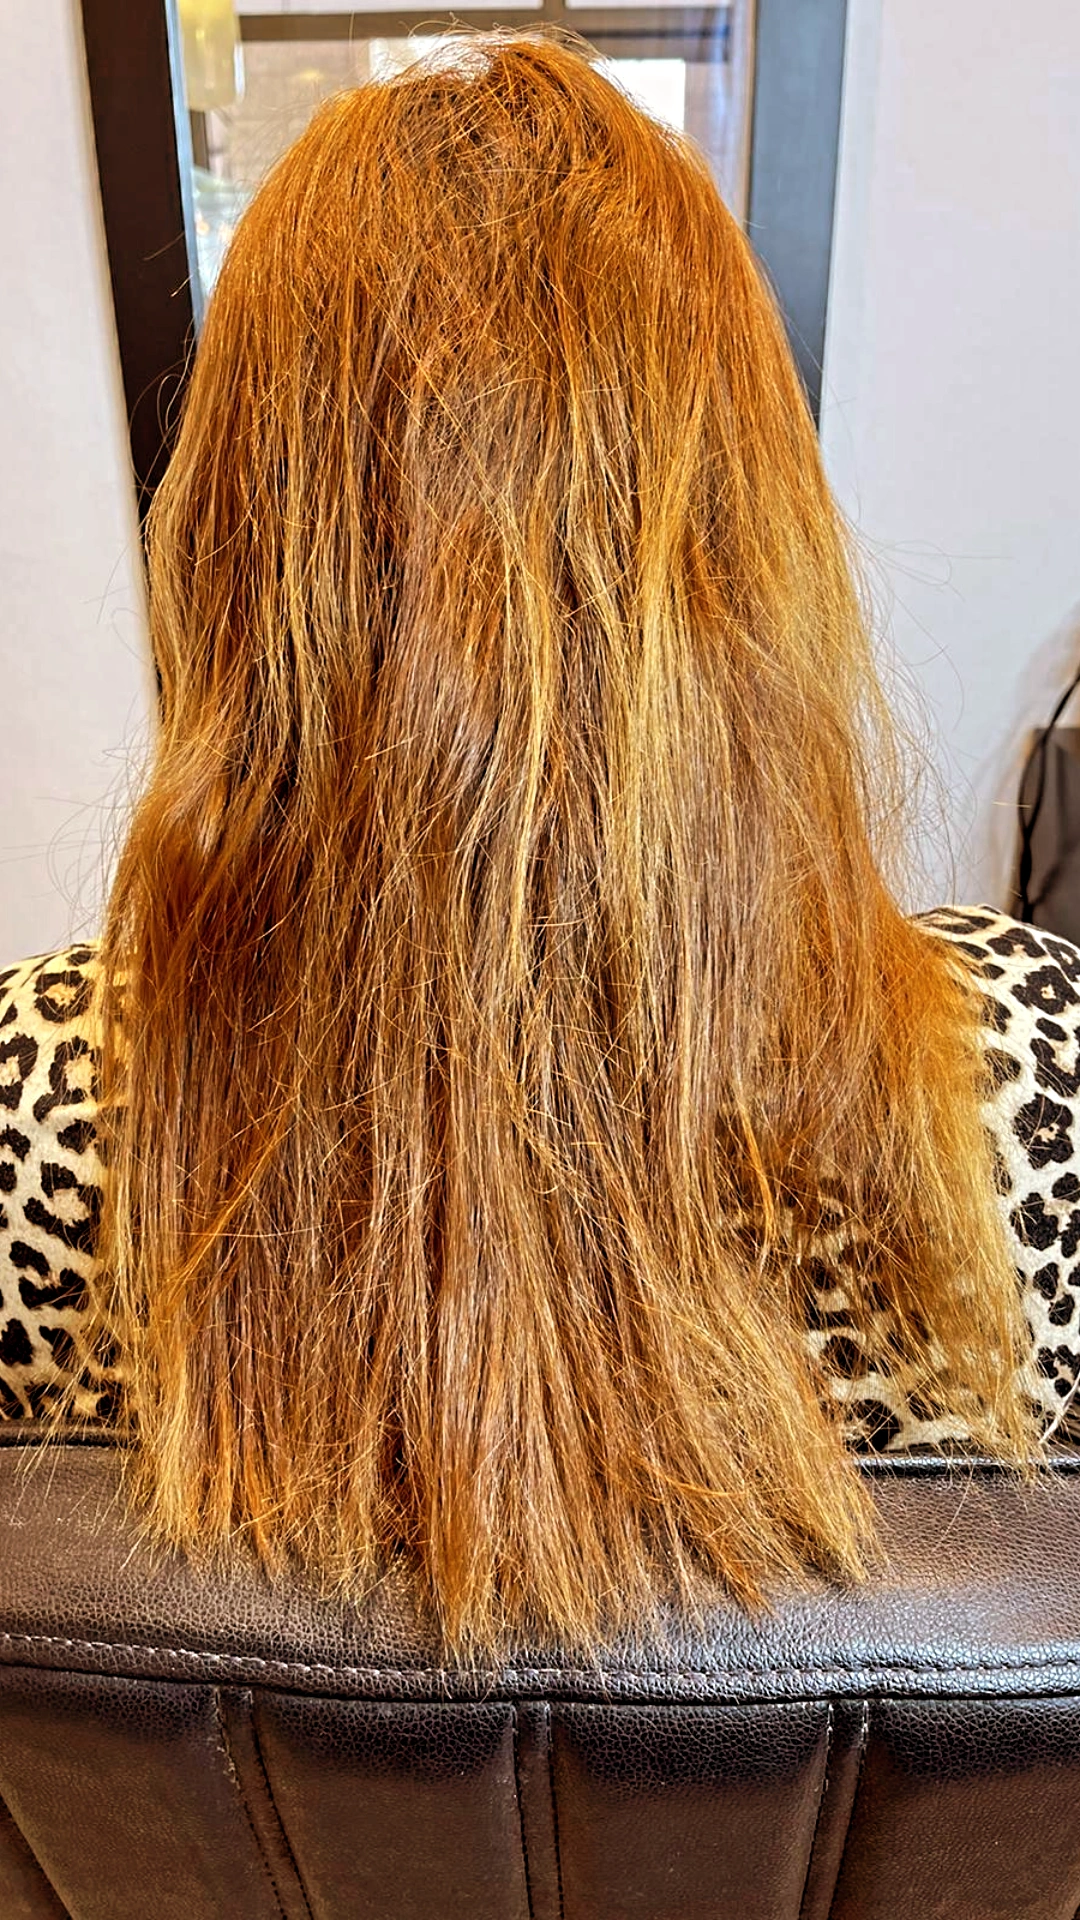 הילה ביוטי בוטיק - מכון יופי בעכו - החלקת שיער אורגנית